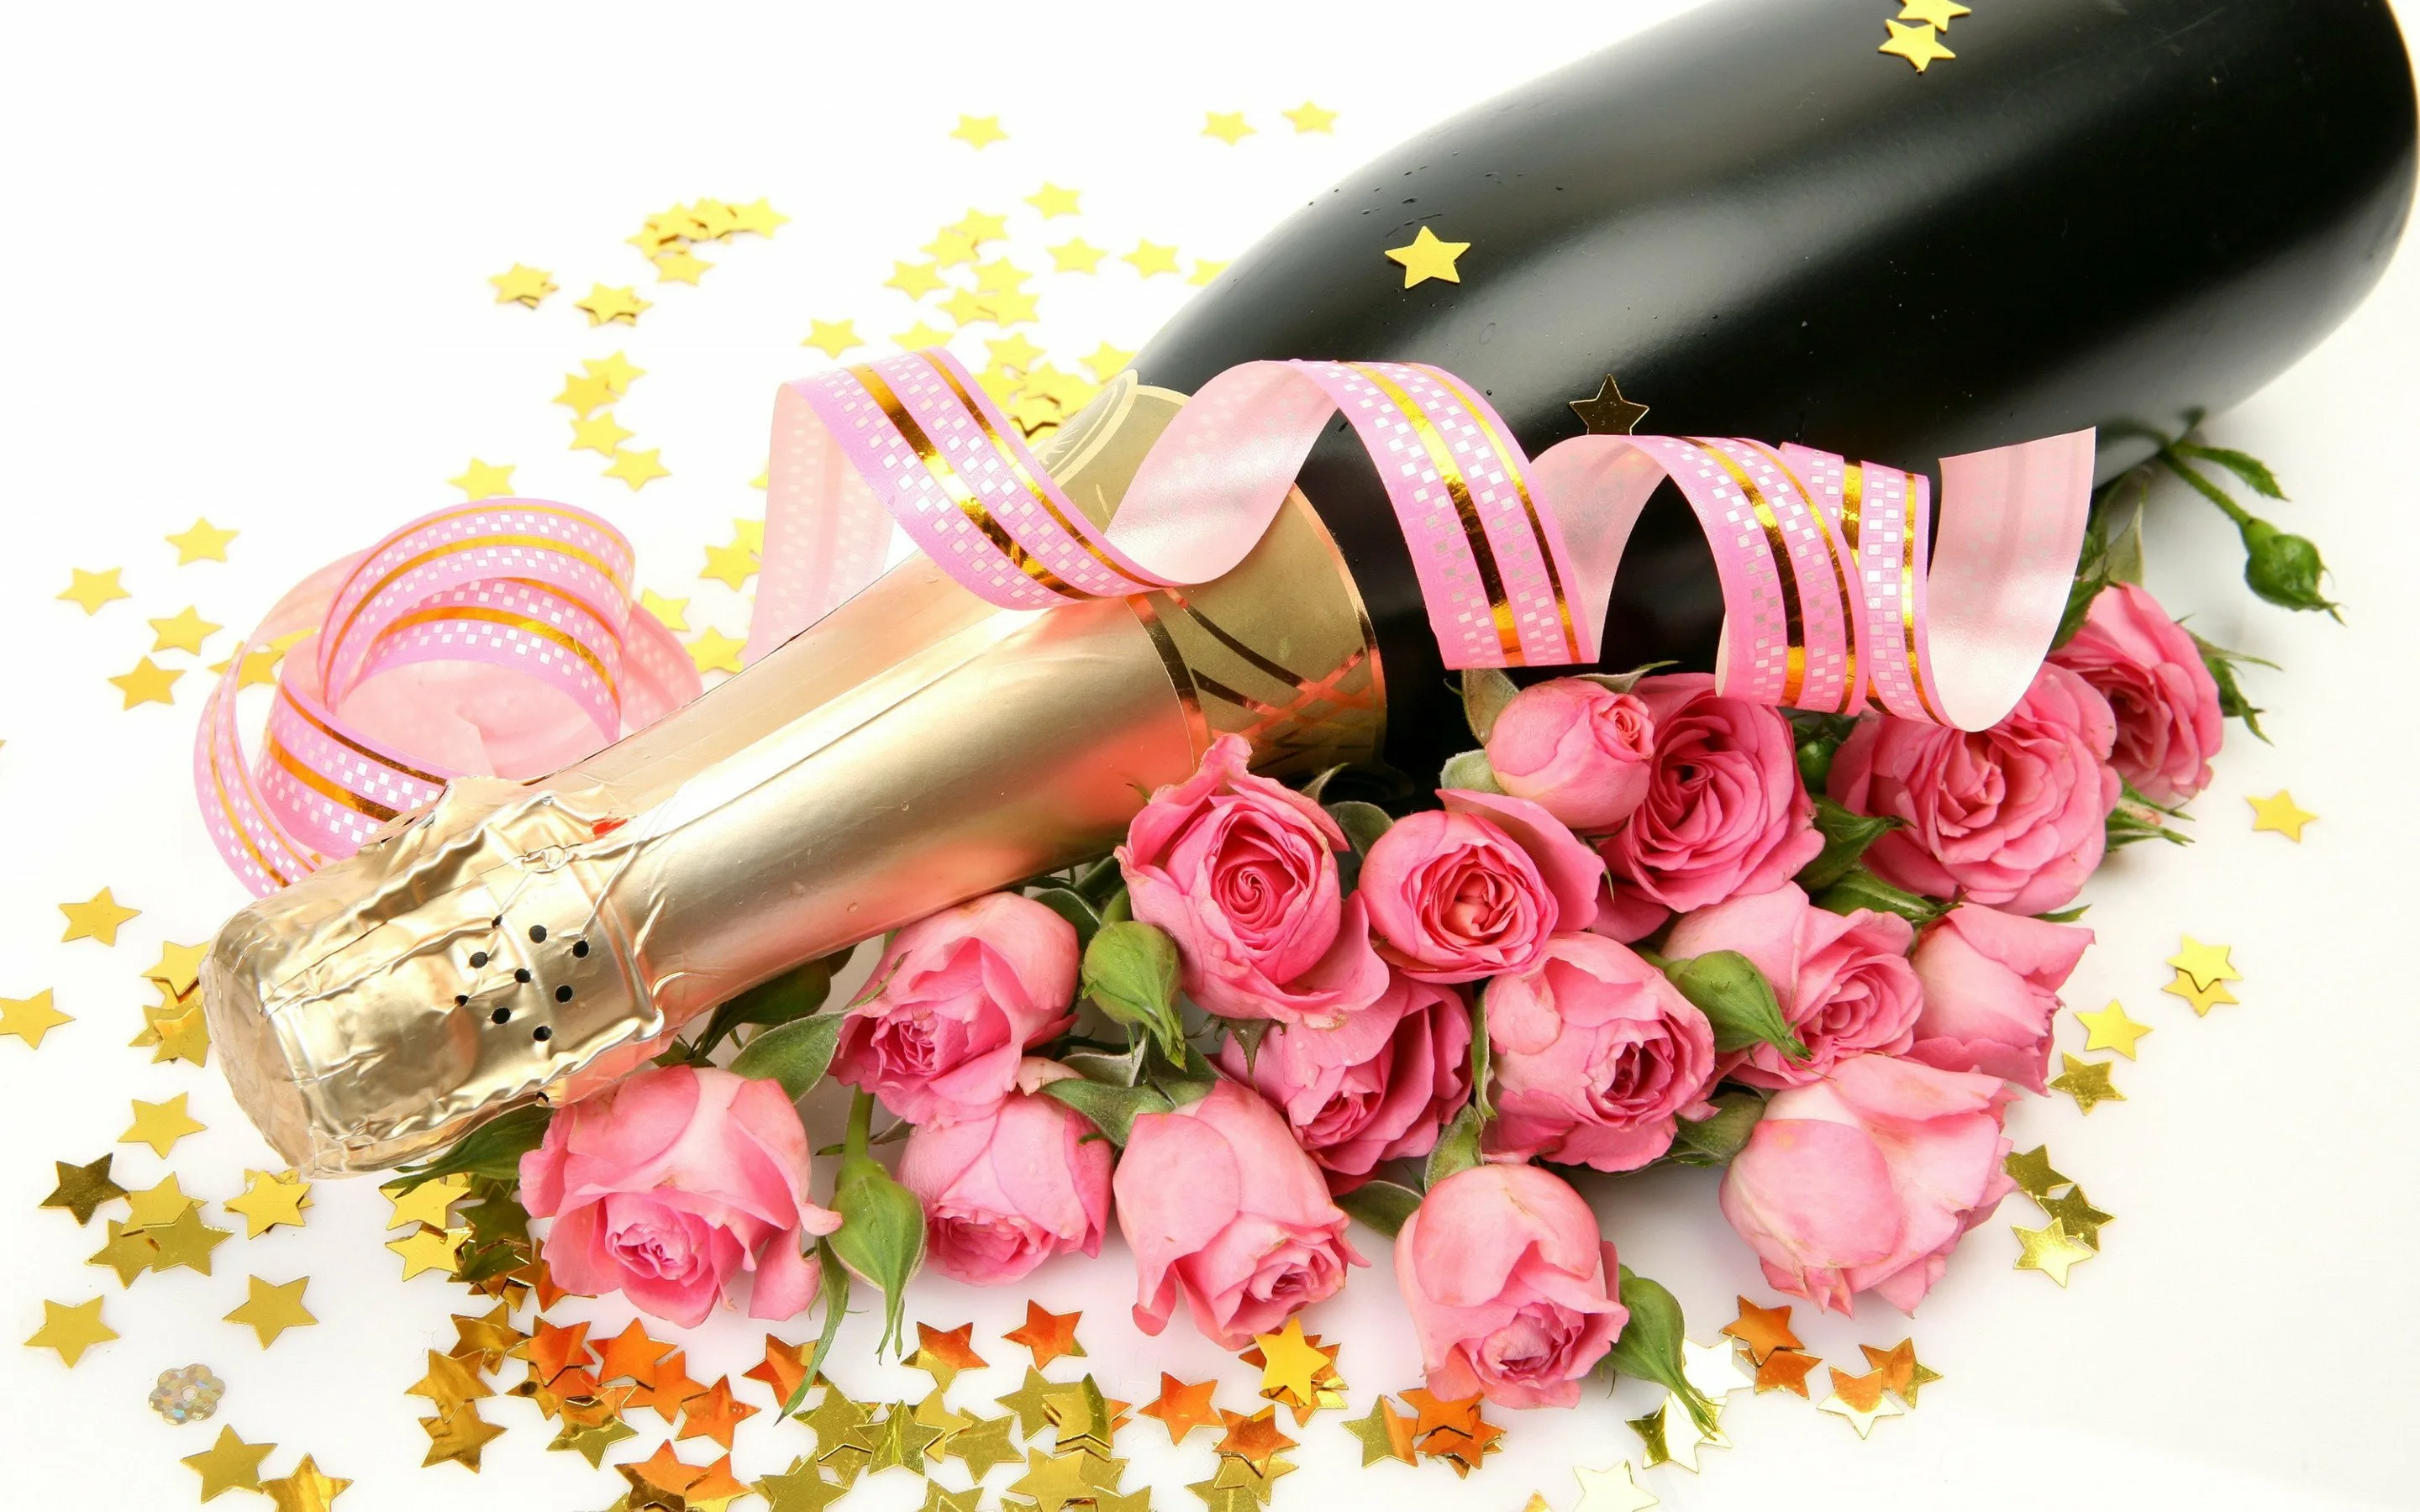 Фото Слова к подарку бутылка шампанского #90